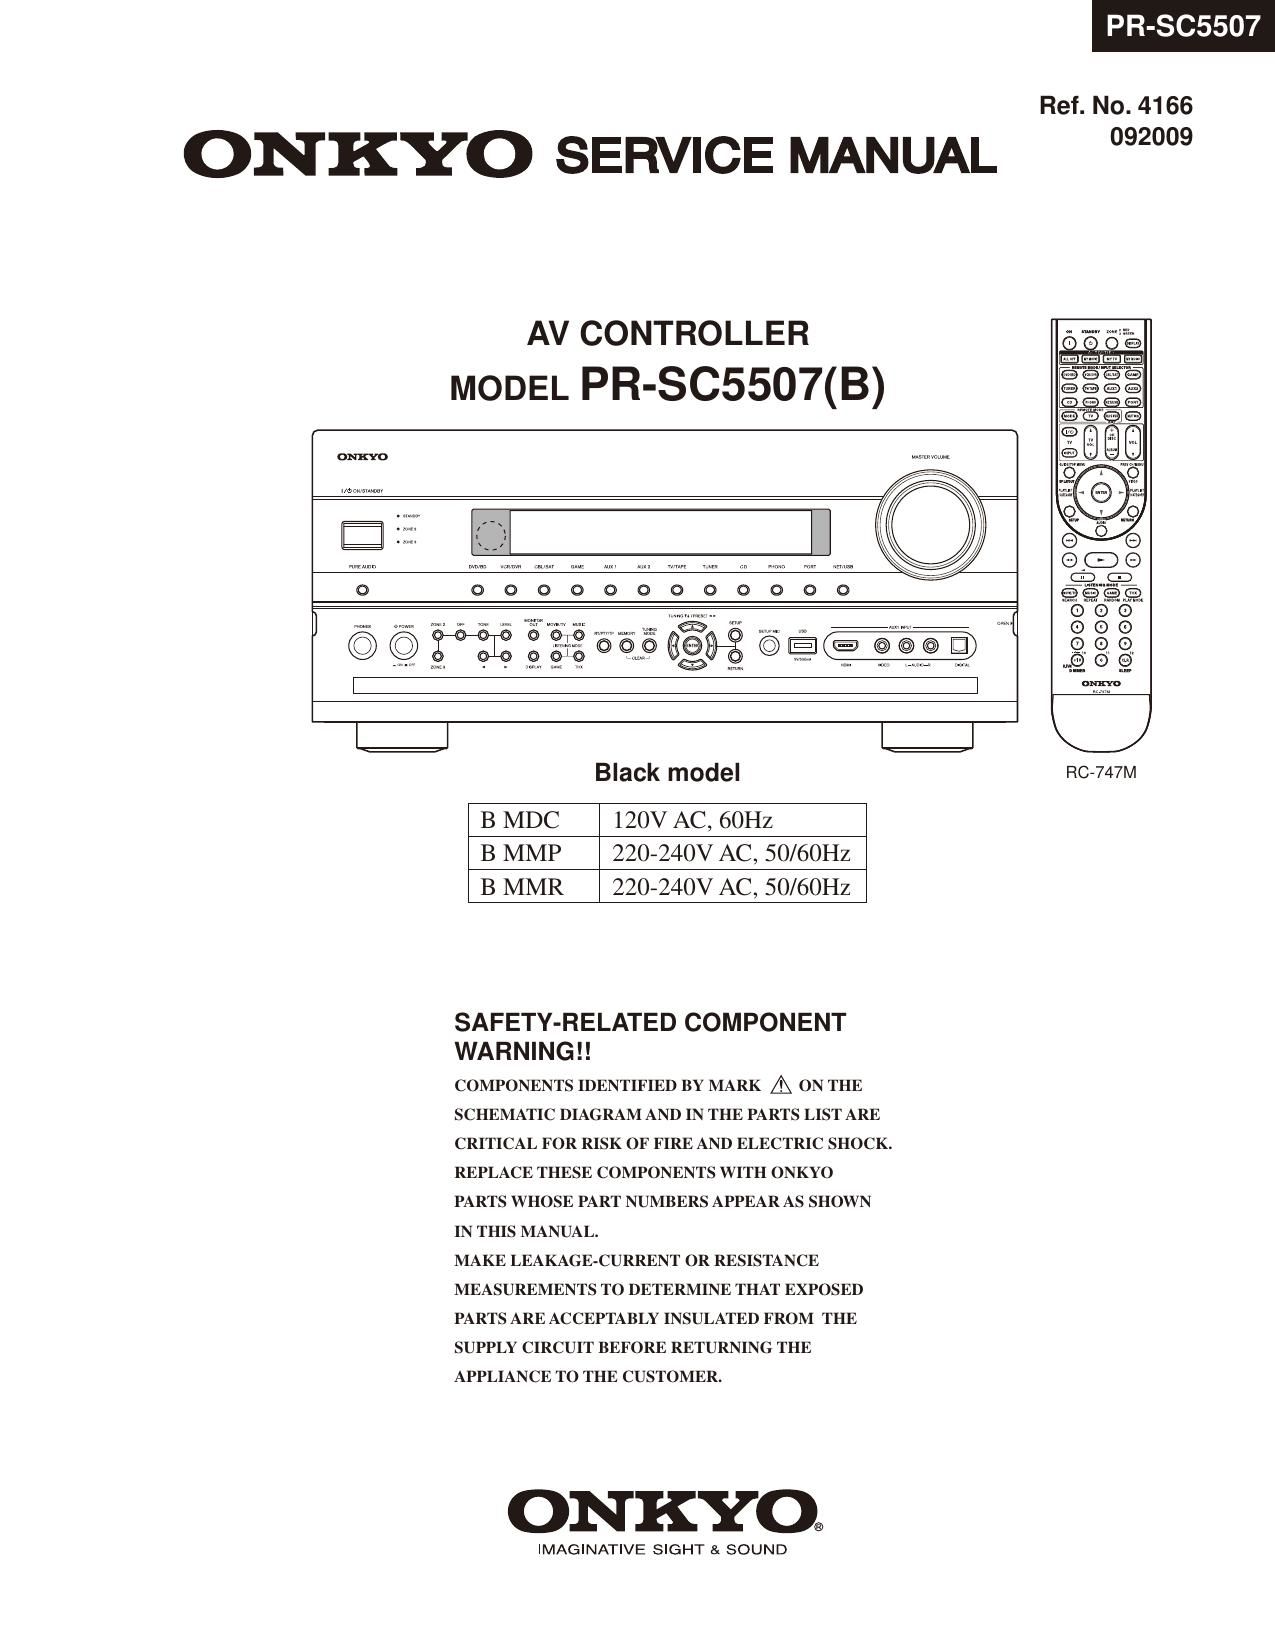 Onkyo PRSC 5507 B Service Manual